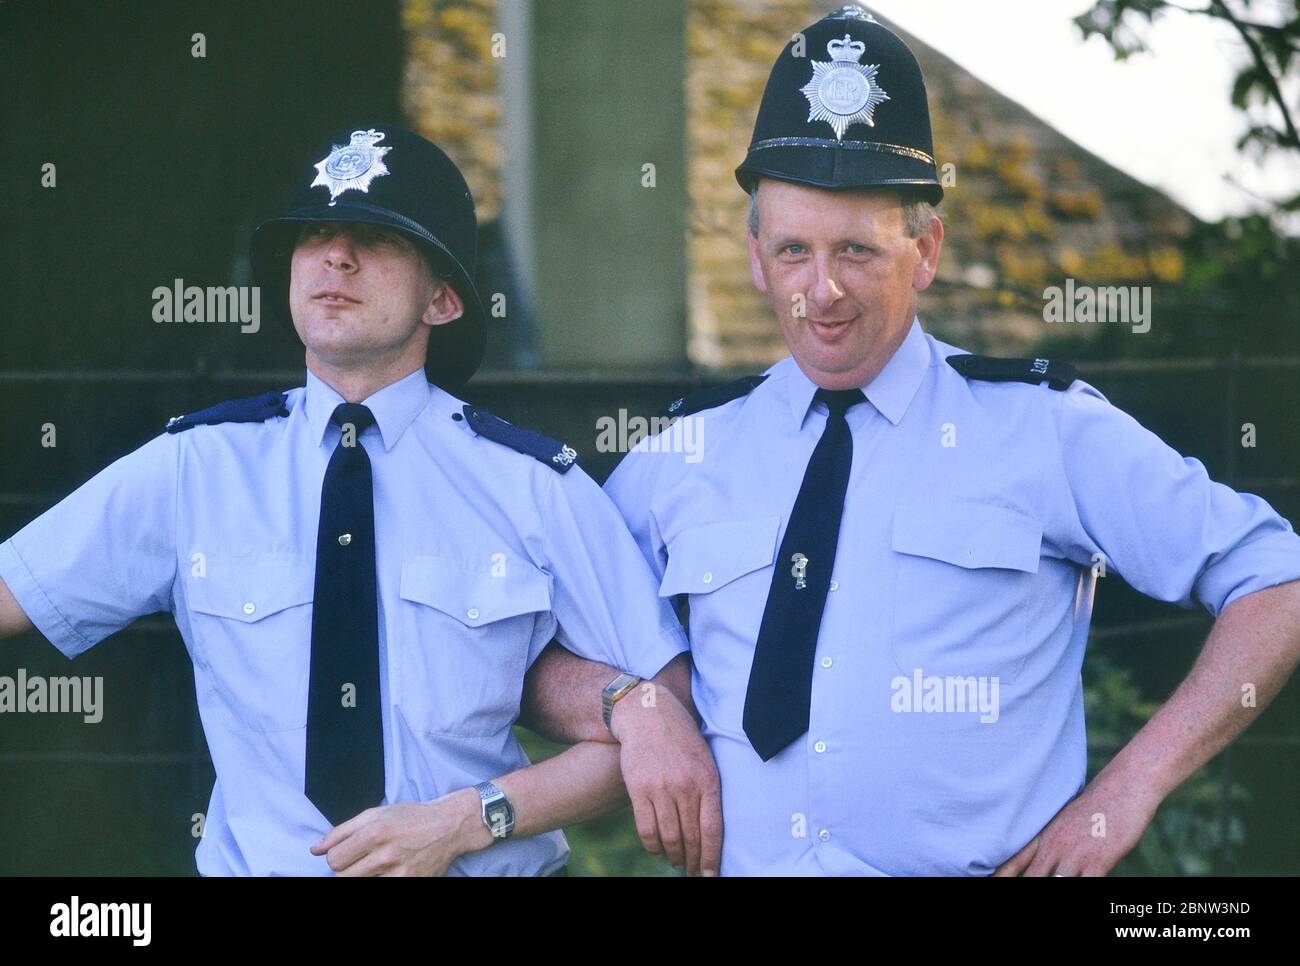 Zwei männliche Polizeihelme posieren für ein Lachen mit der falschen Größe Hüter Helme. England, Großbritannien. Um die 1980er Jahre Stockfoto